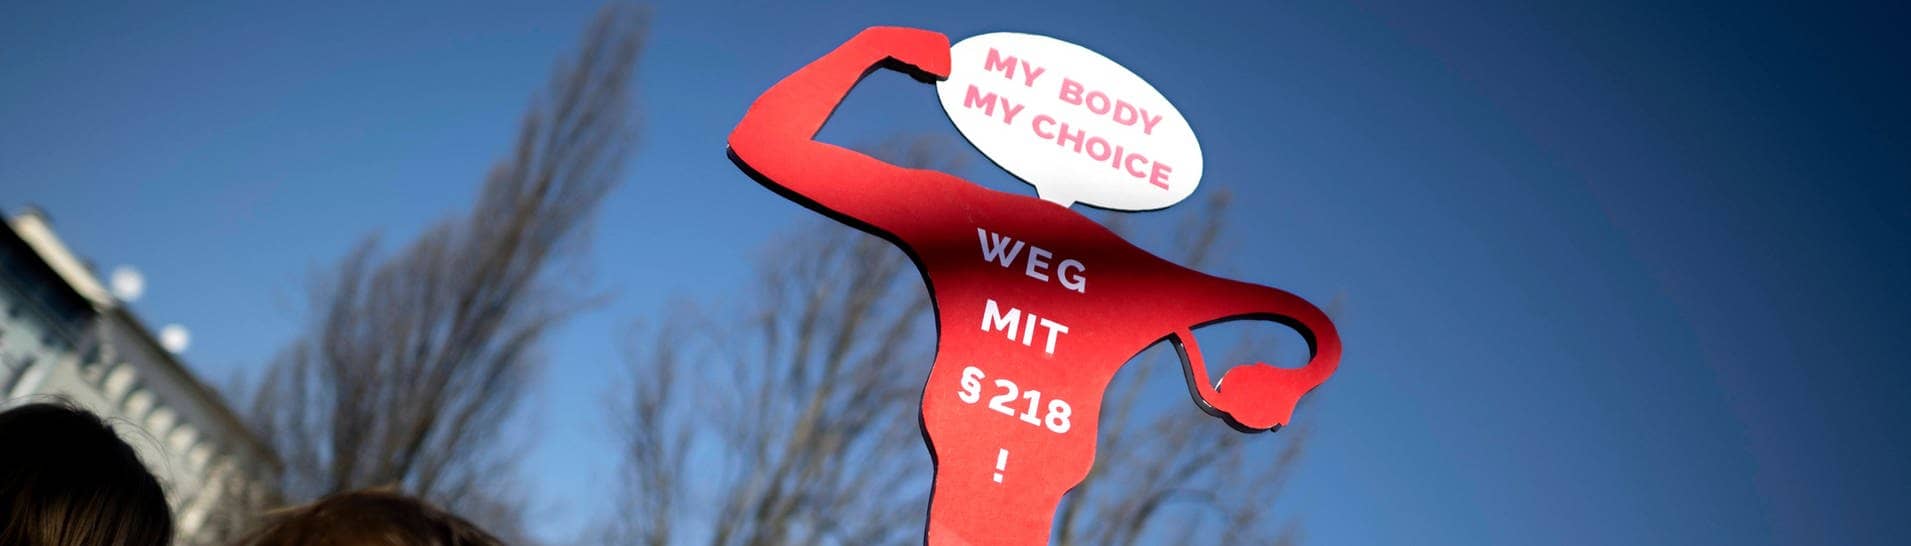 Eine Kommission empfiehlt Änderungen bei Abtreibung, Leihmutterschaft und Eizellspende. (Foto: IMAGO, IMAGO / IPON)